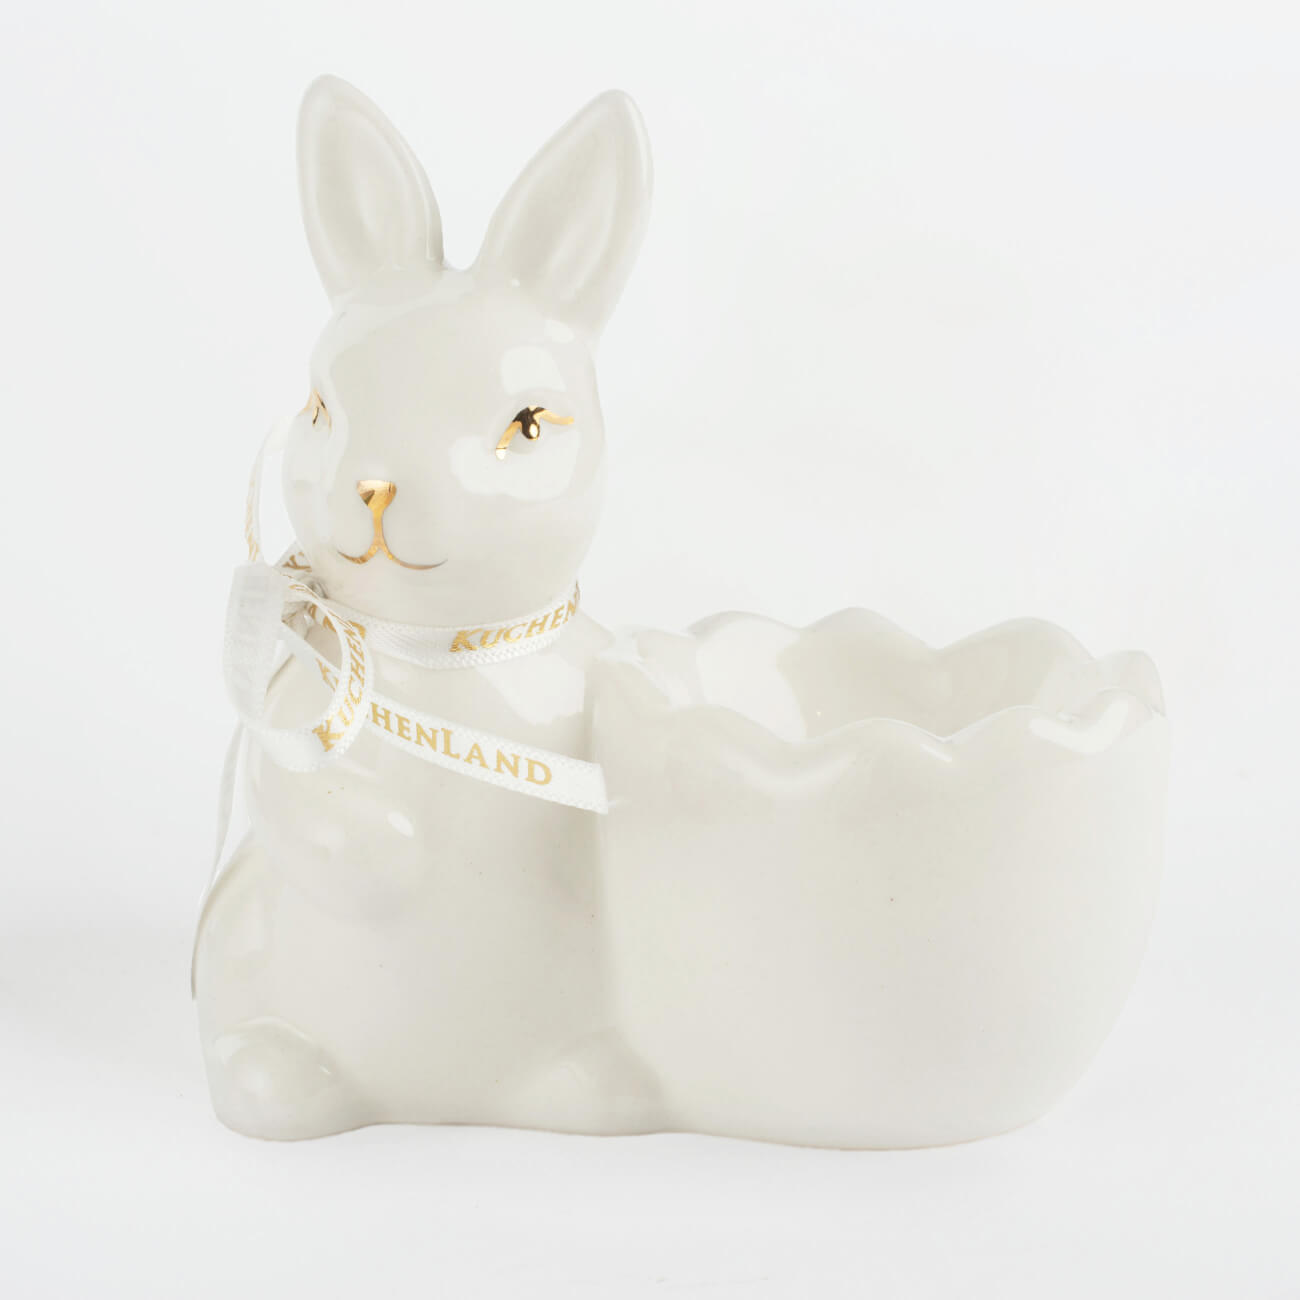 Подставка для яйца, 10 см, керамика, бело-золотистая, Кролик со скорлупкой, Easter gold подставка для яйца 6 см керамика белая кролик в ах easter